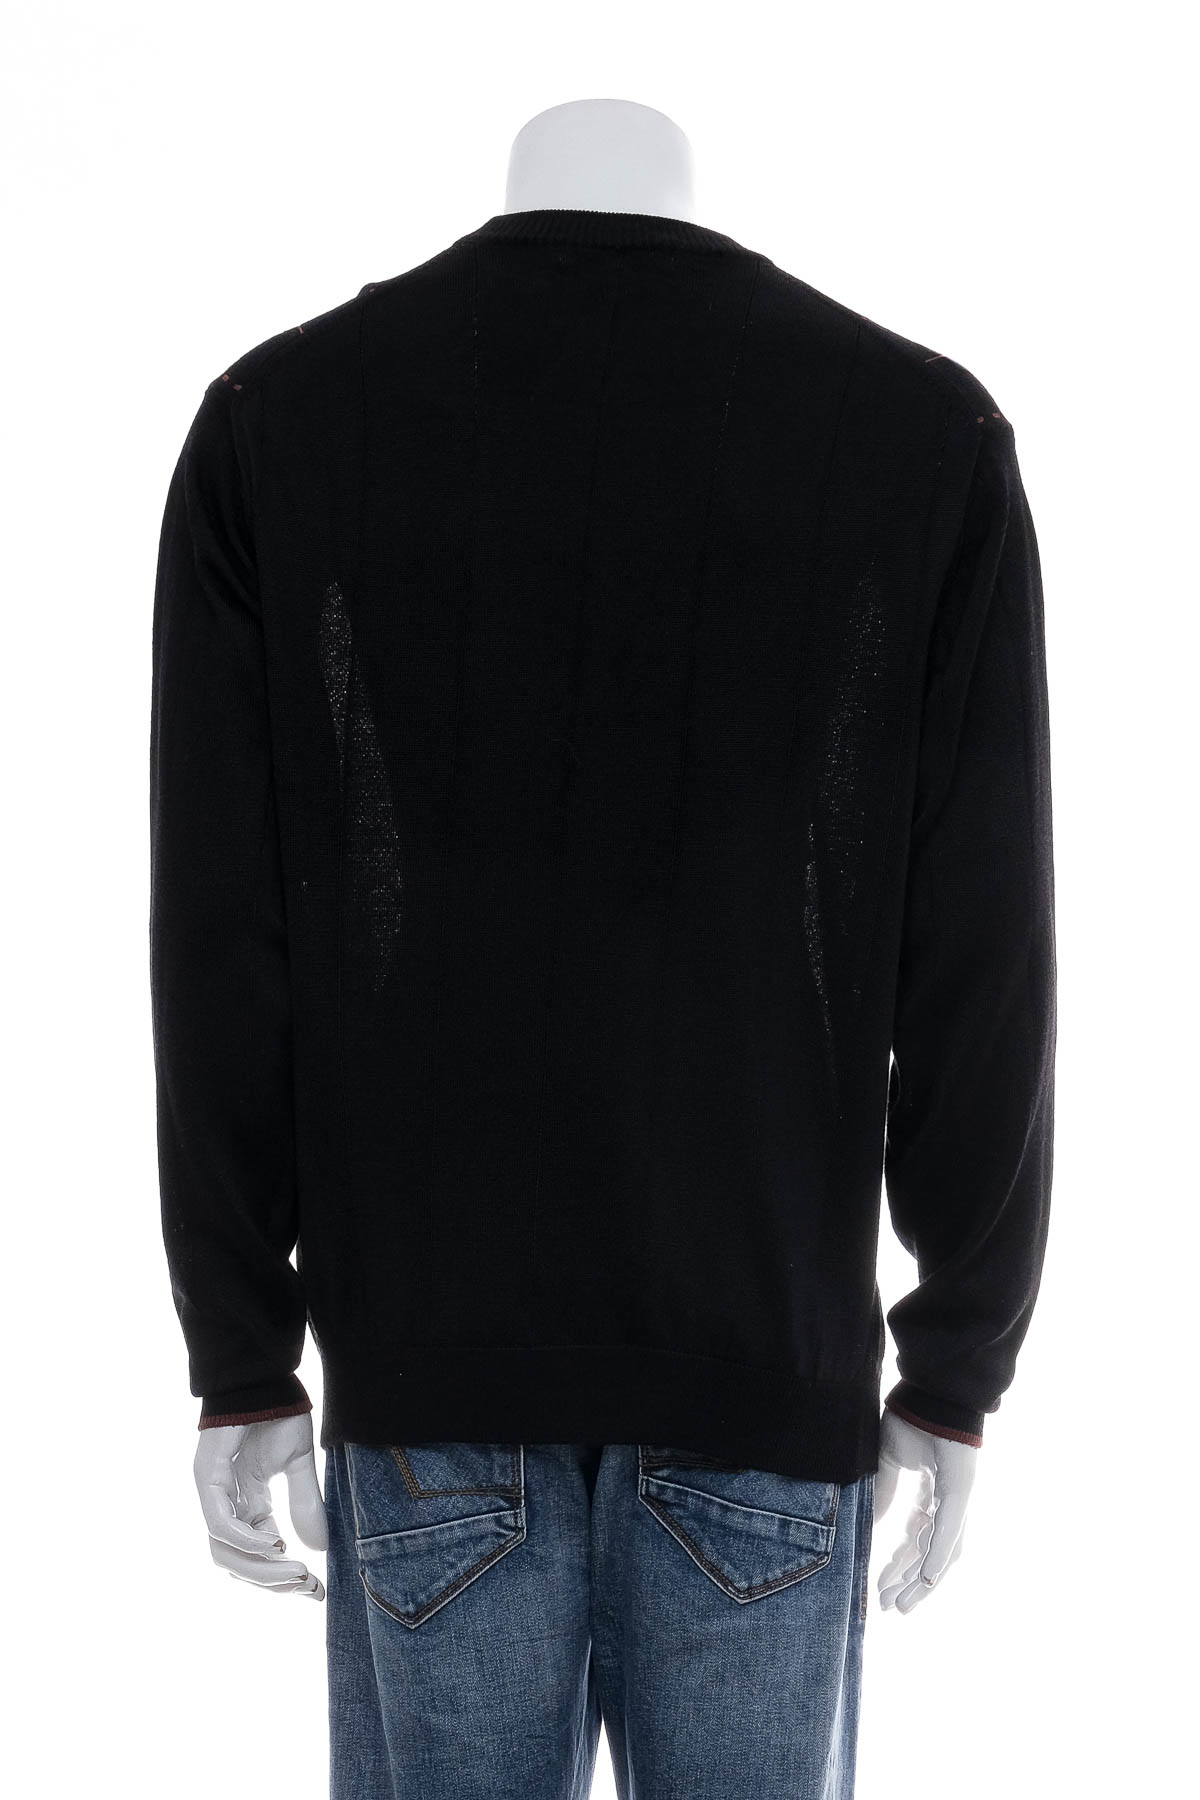 Men's sweater - Pronto Uomo - 1